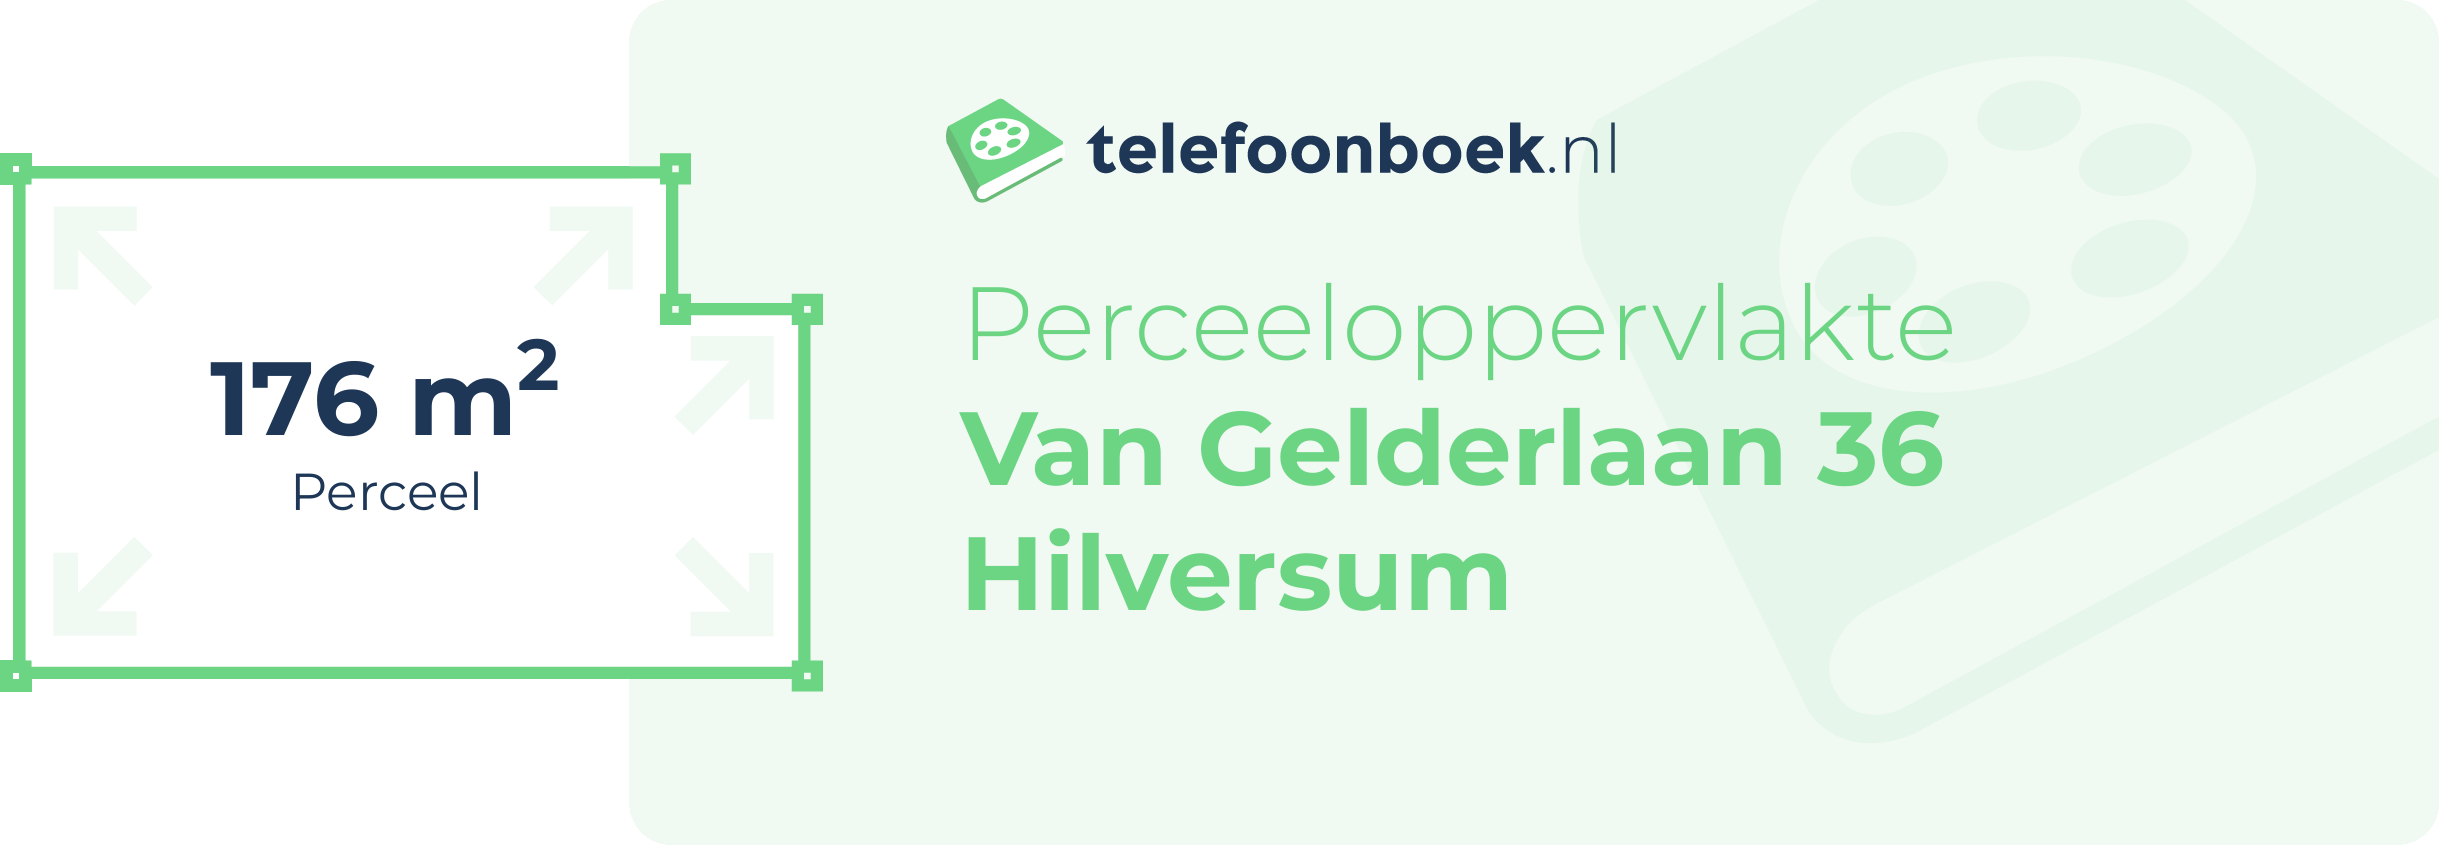 Perceeloppervlakte Van Gelderlaan 36 Hilversum